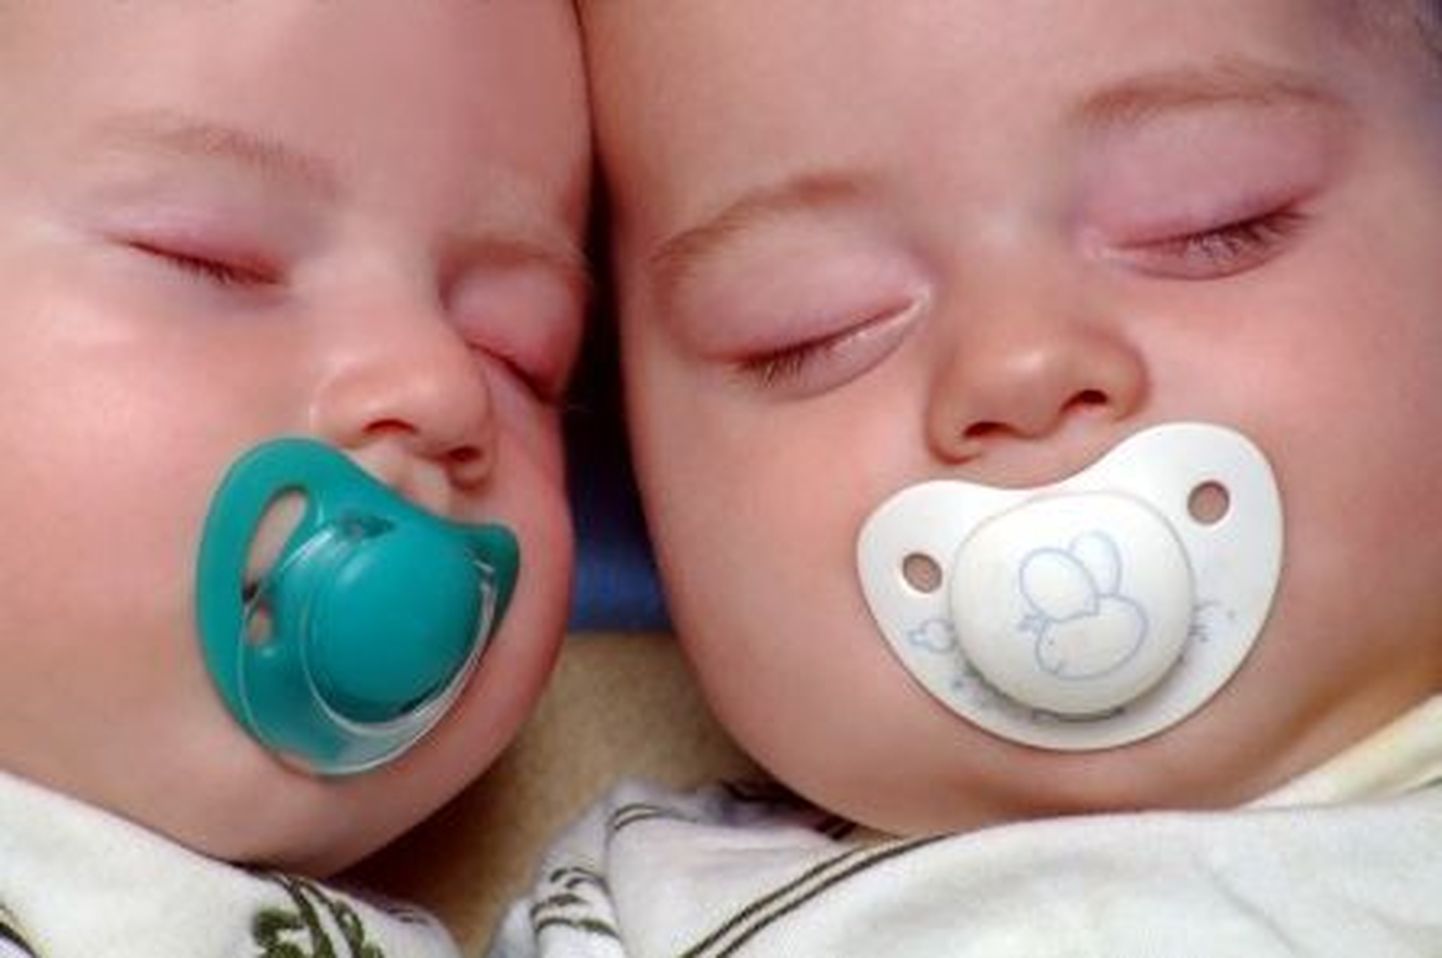 USAs tõid kaksikud naised peaaegu ühel ajal lapse ilmale